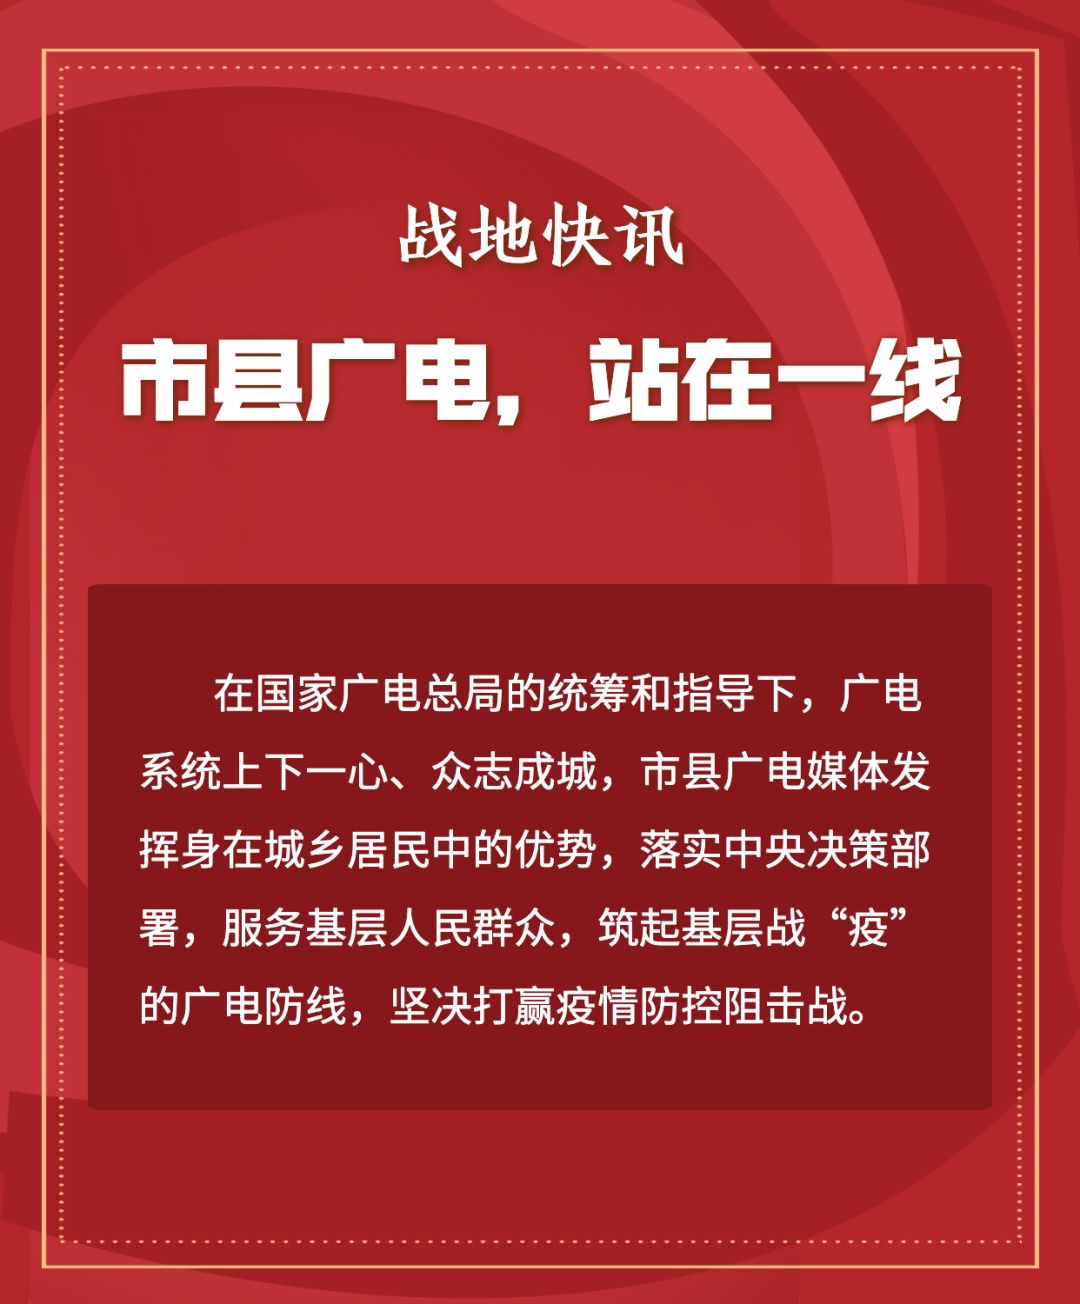 郑州台:推出抗击疫情全媒体直播郑州电台融媒体新闻中心,郑州市应急